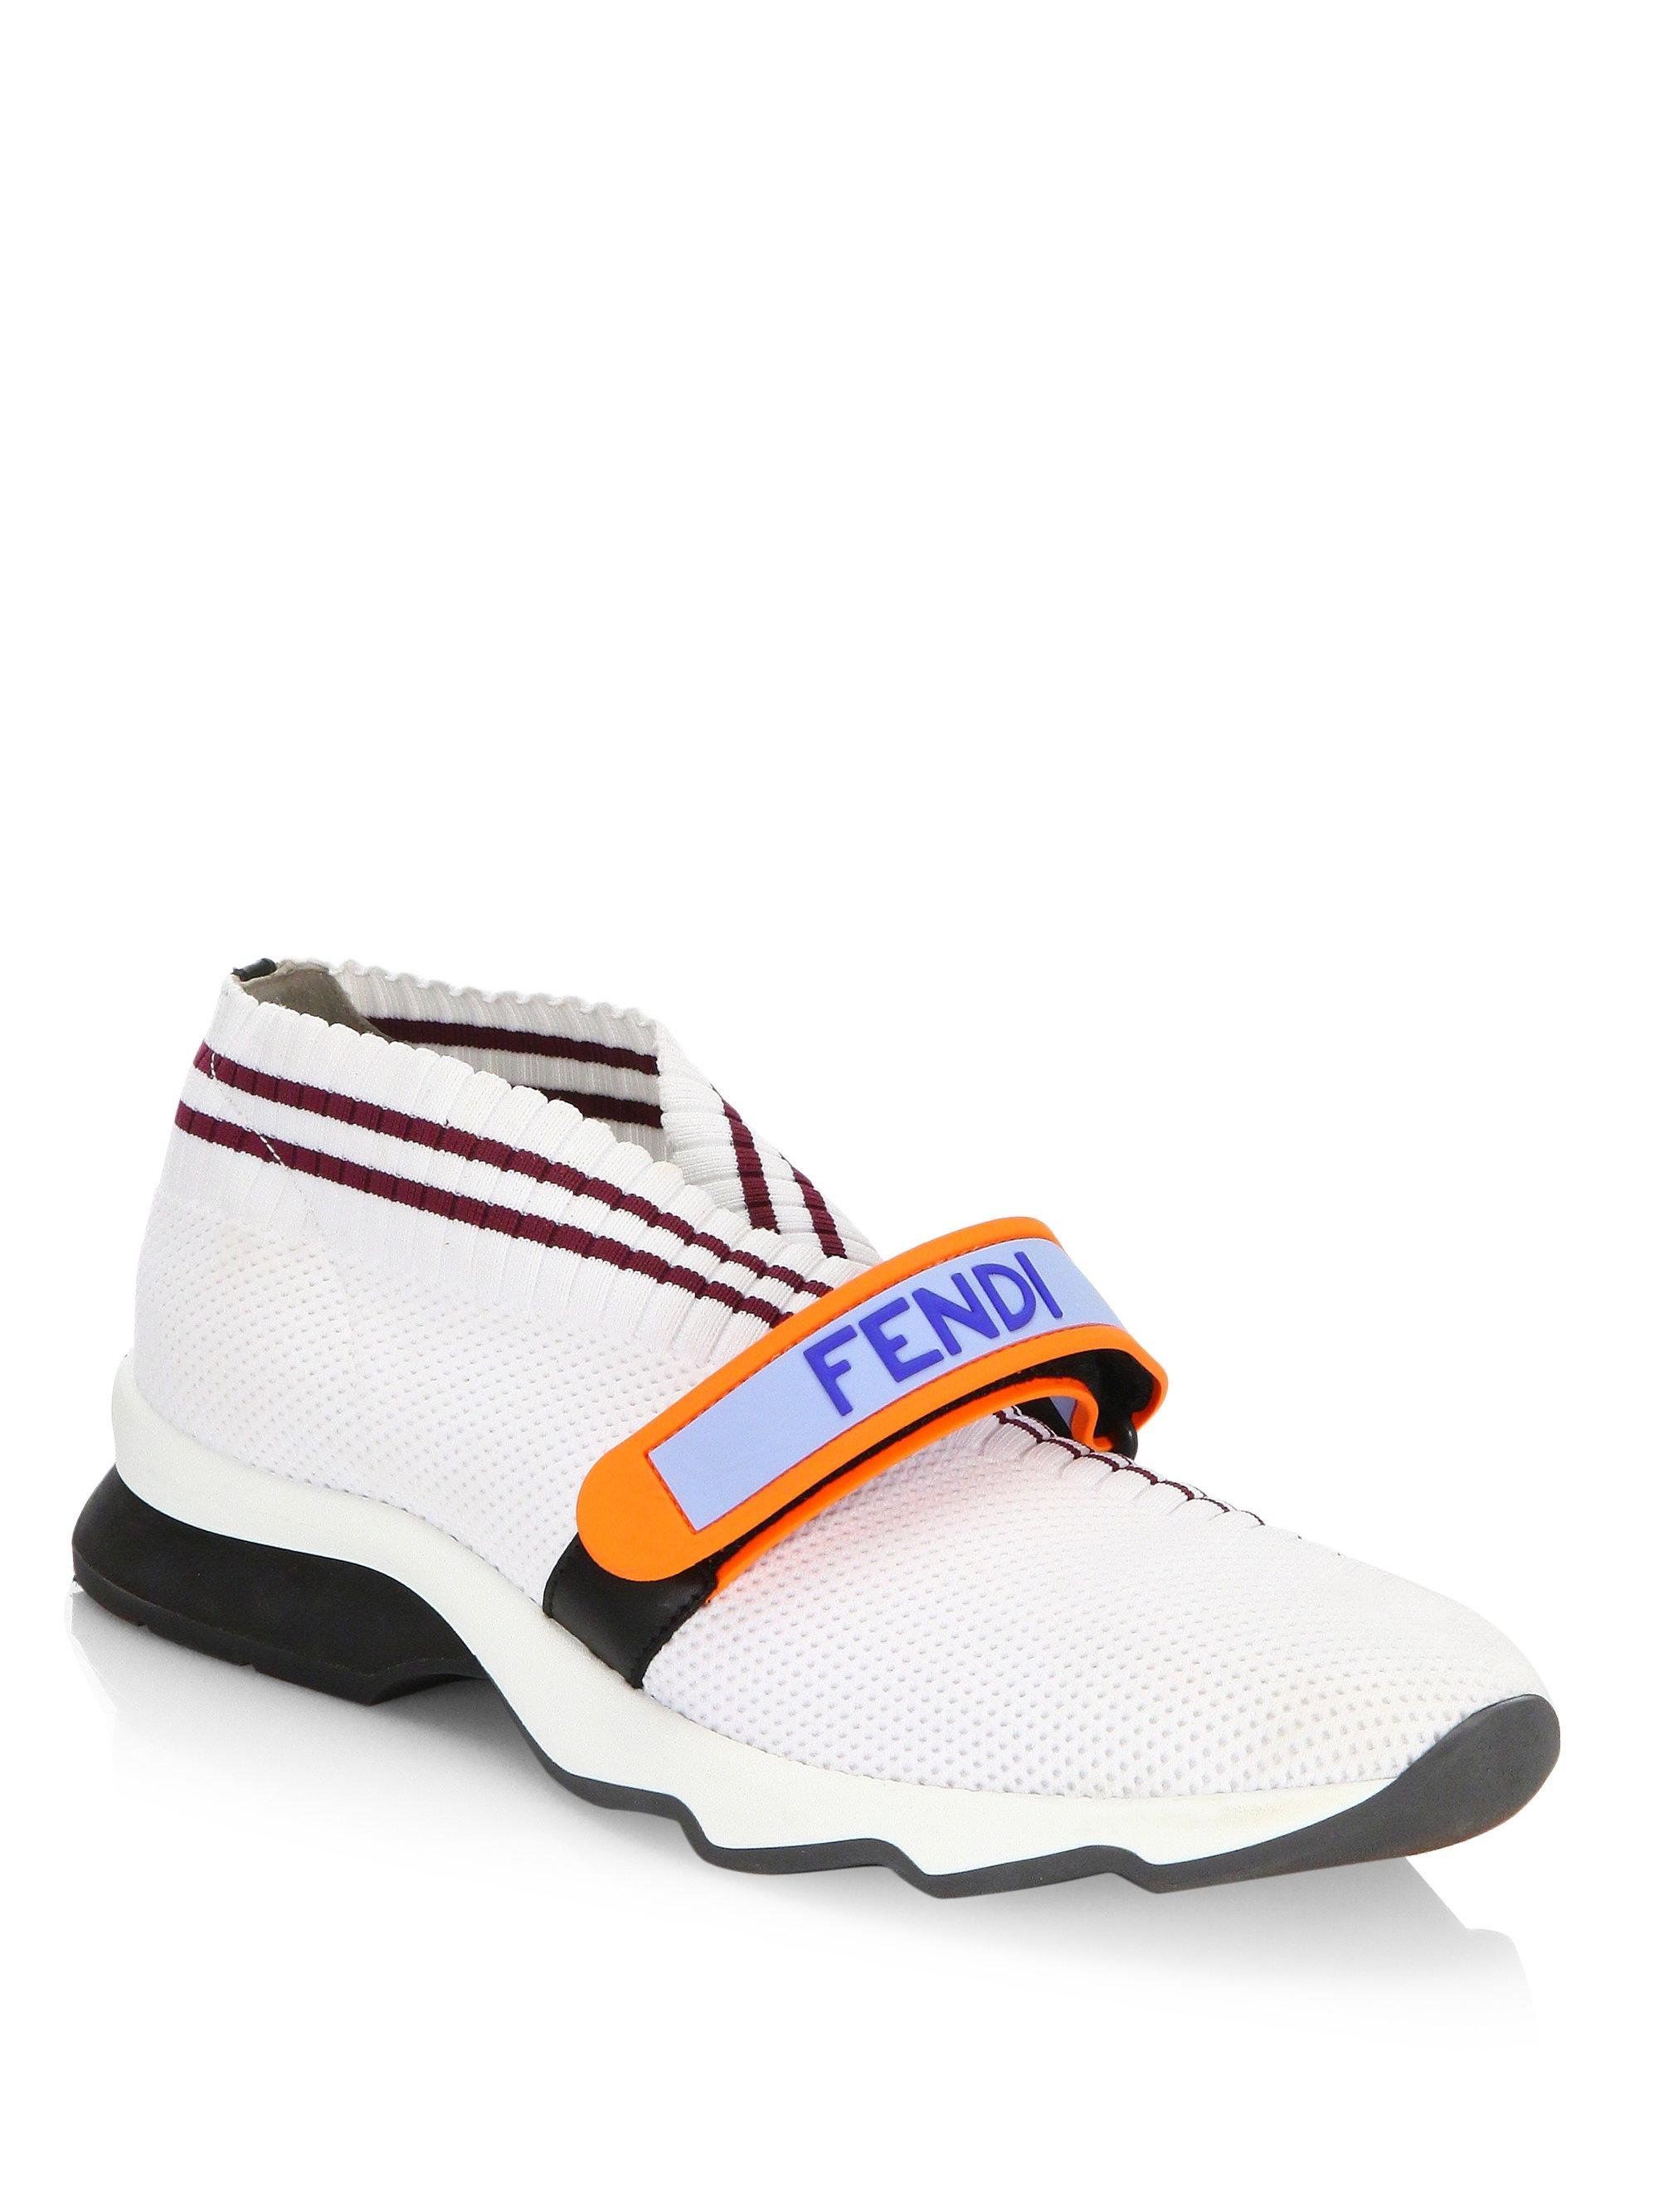 Fendi Leather Rockoko Knit Sneakers in 